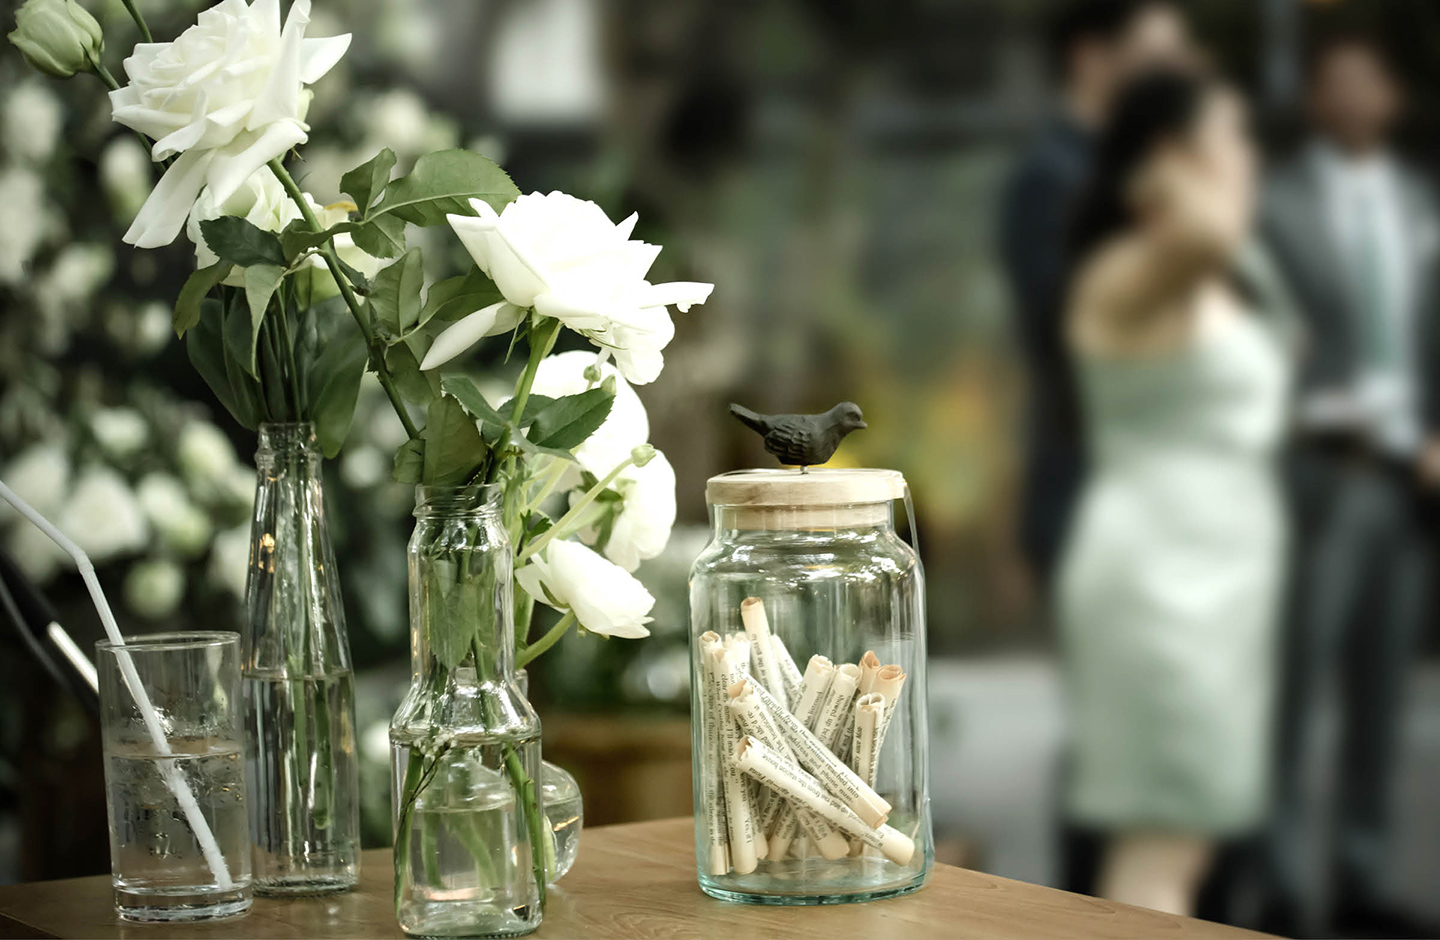 Hochzeitstisch dekoriert mit einem alten Glas in dem eingerollte Zettelchen liegen.